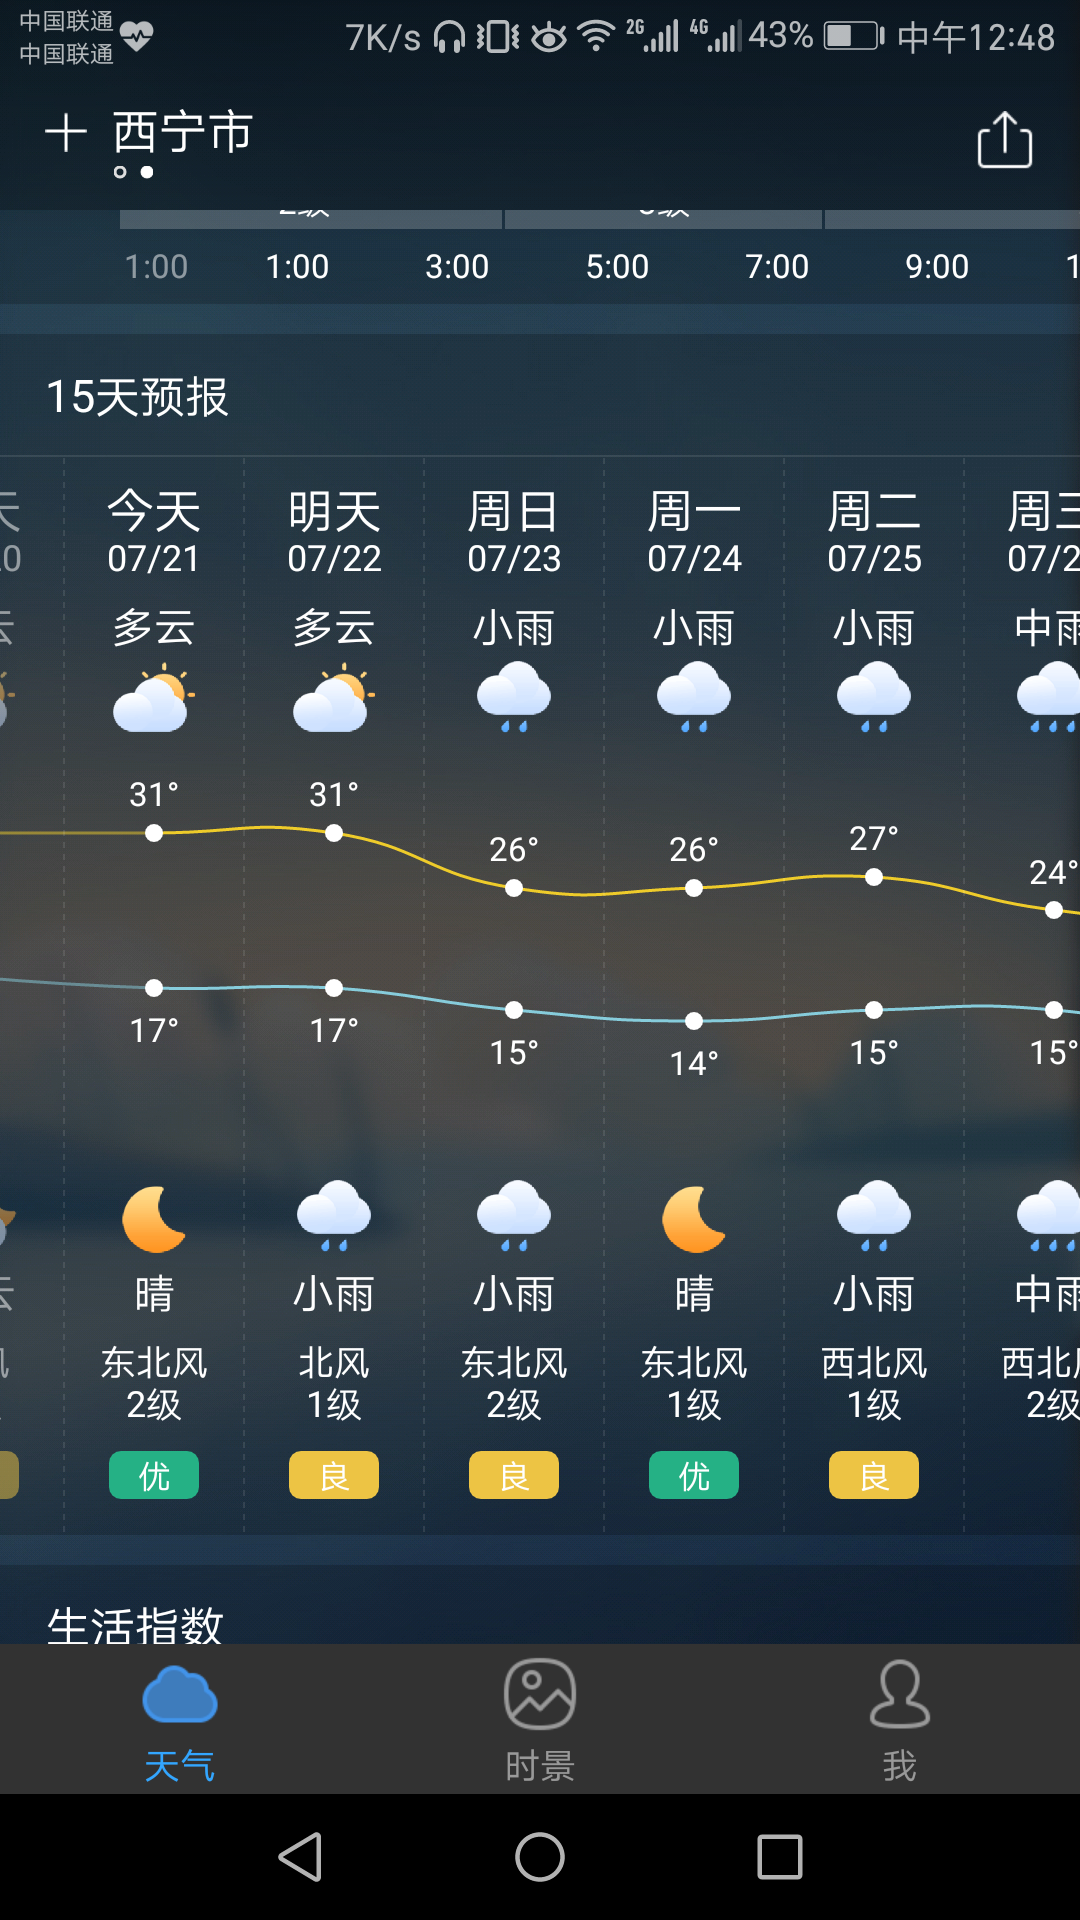 明天准备去 西宁 , 青海湖 玩, 看了天气预报,感觉好难过